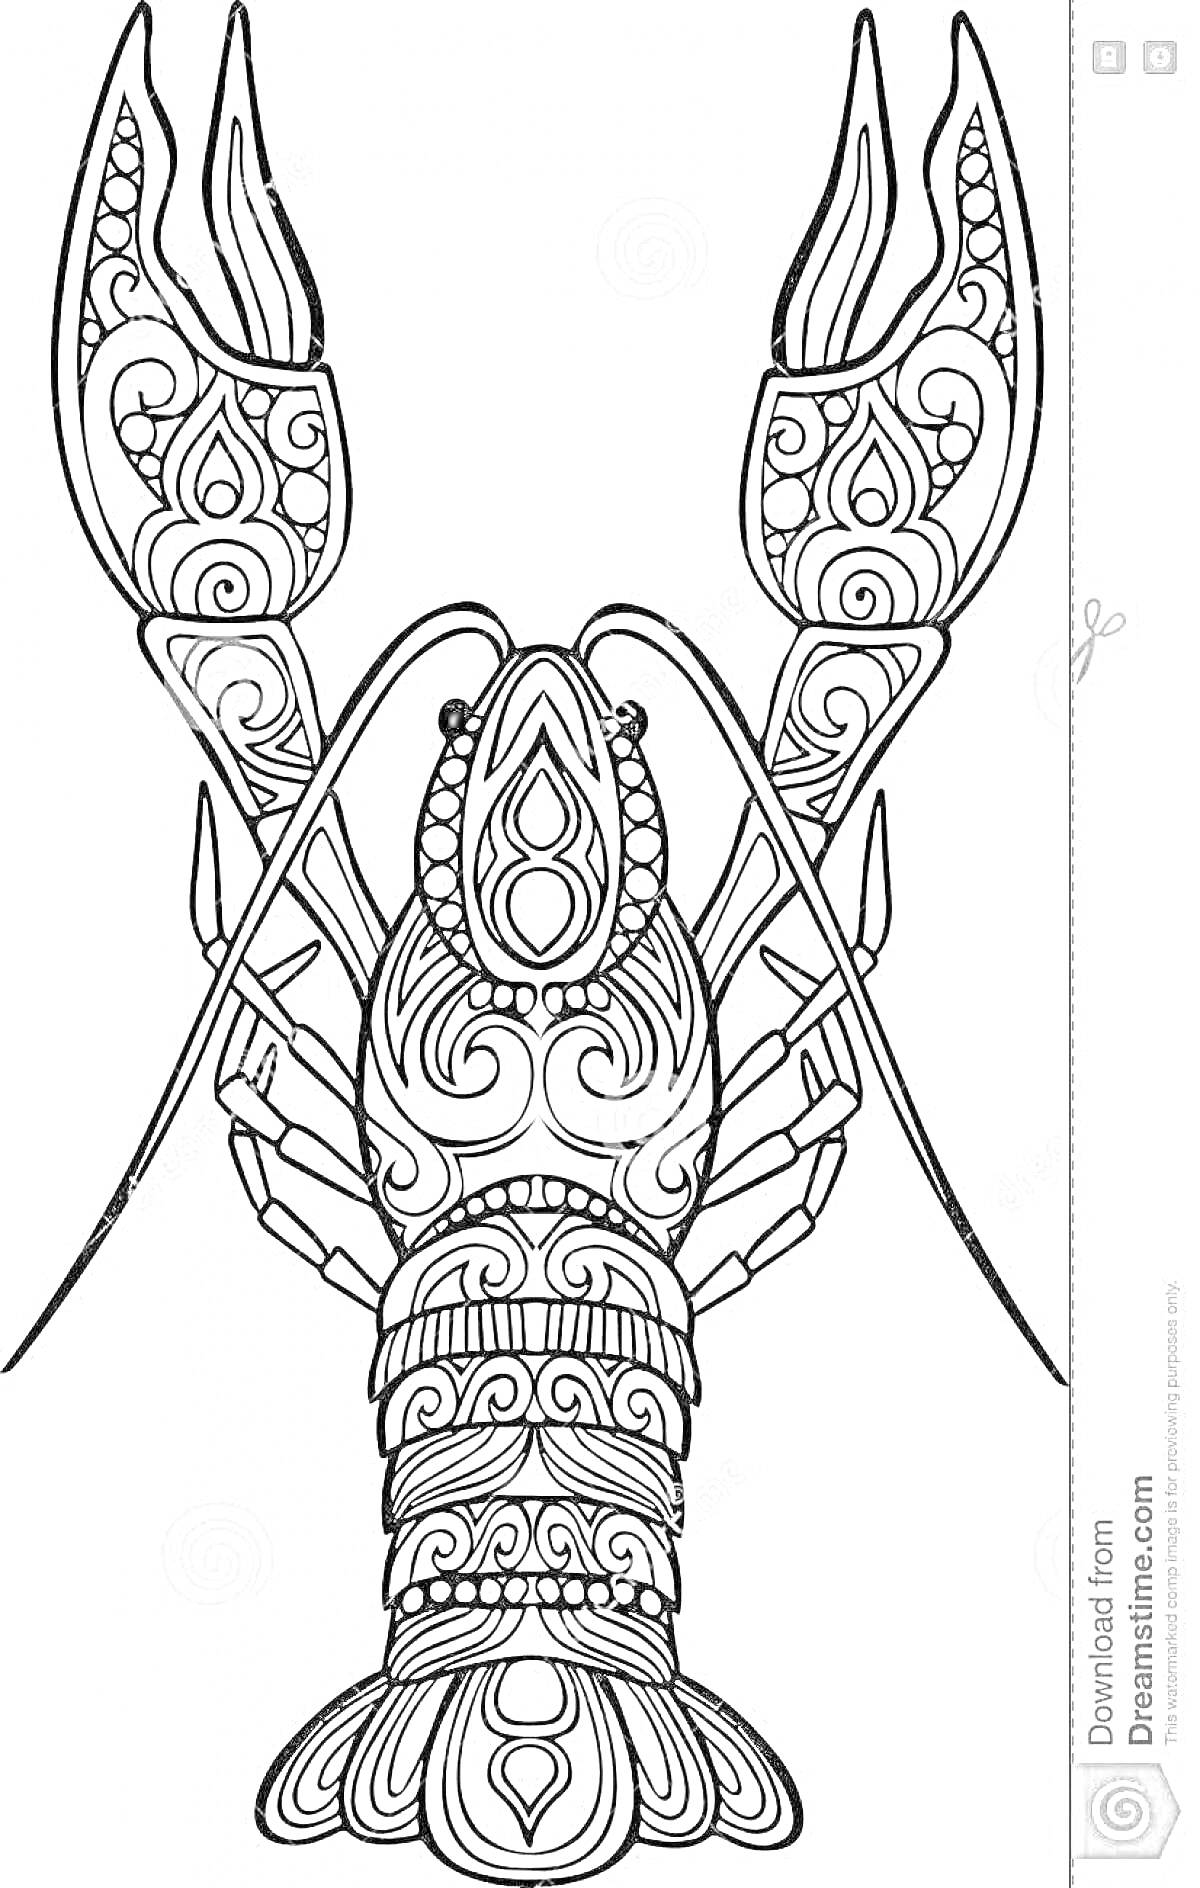 Раскраска Рак-богомол с декоративными узорами